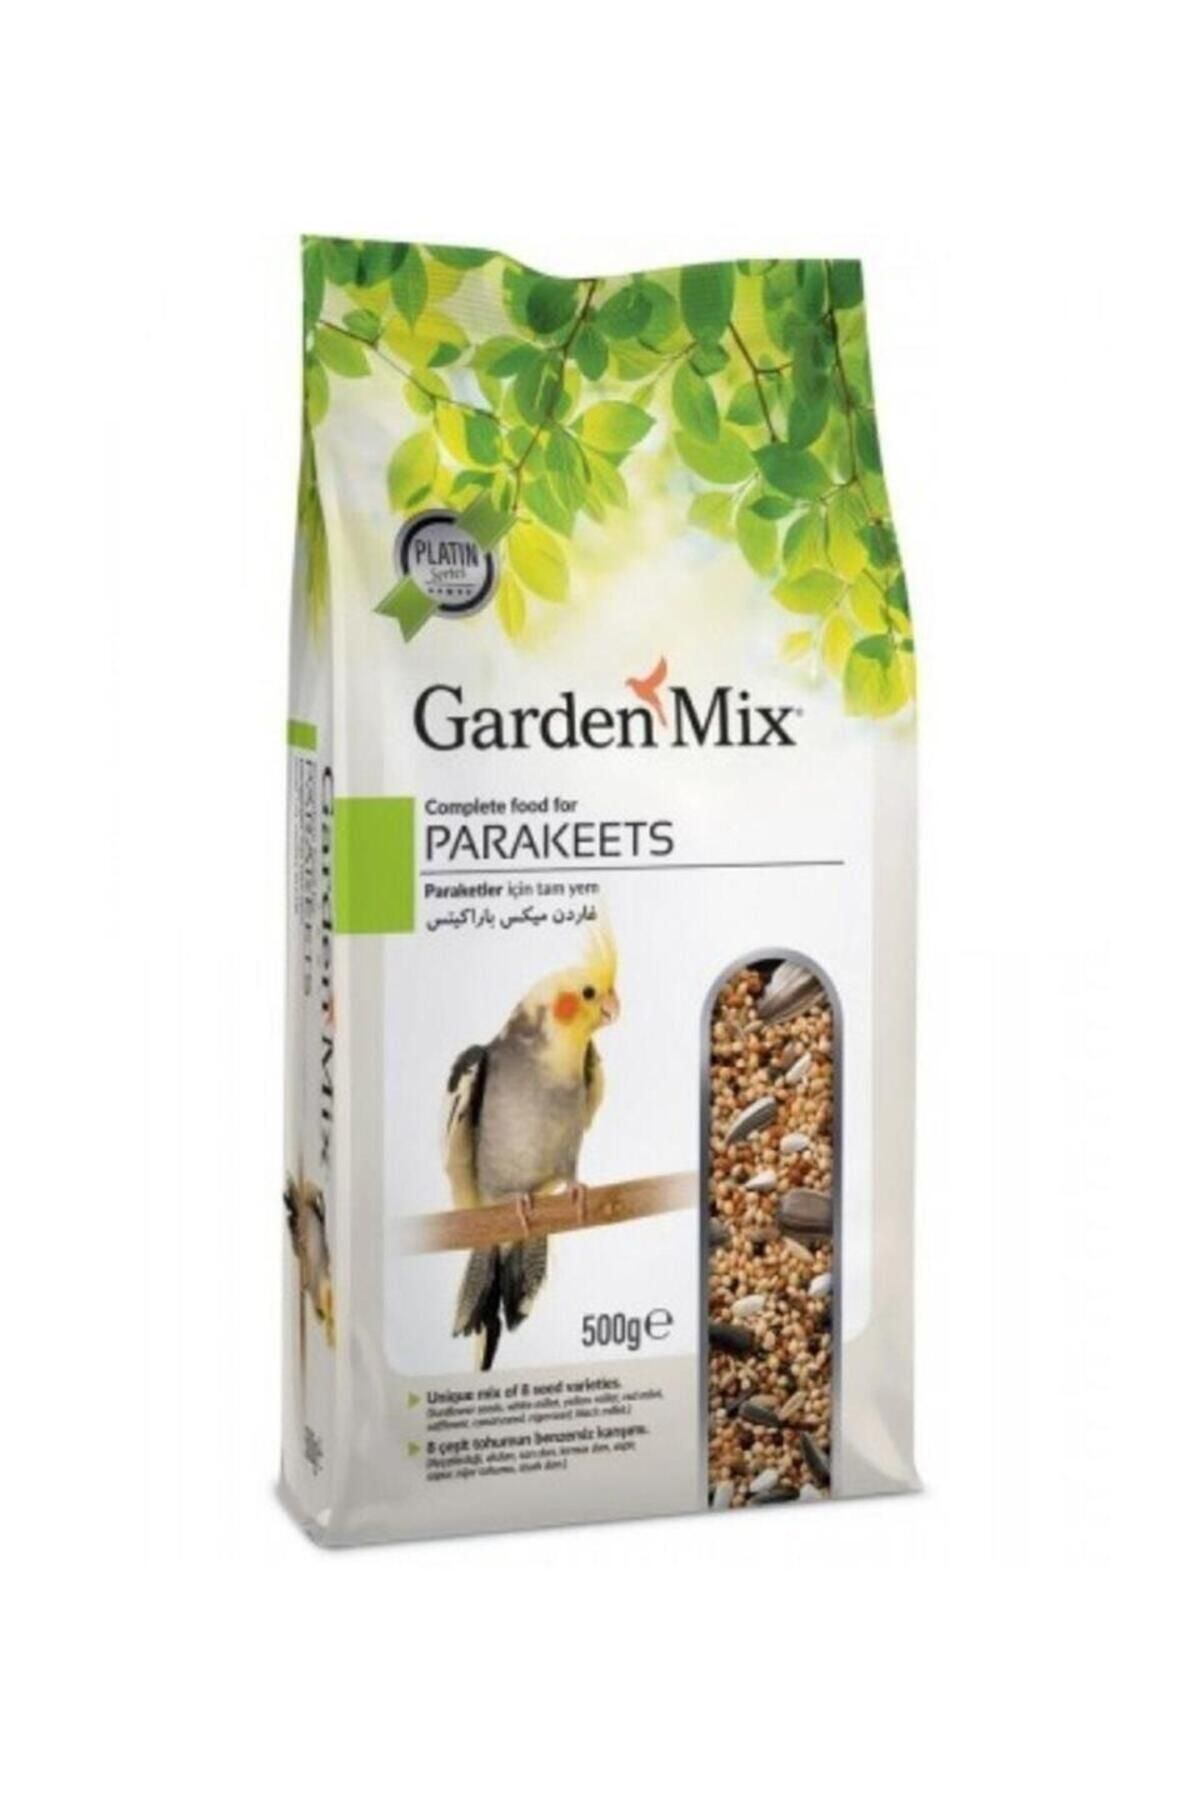 Gardenmix Platin Paraket Sultan Cennet Papağanı Yemi 500 gr